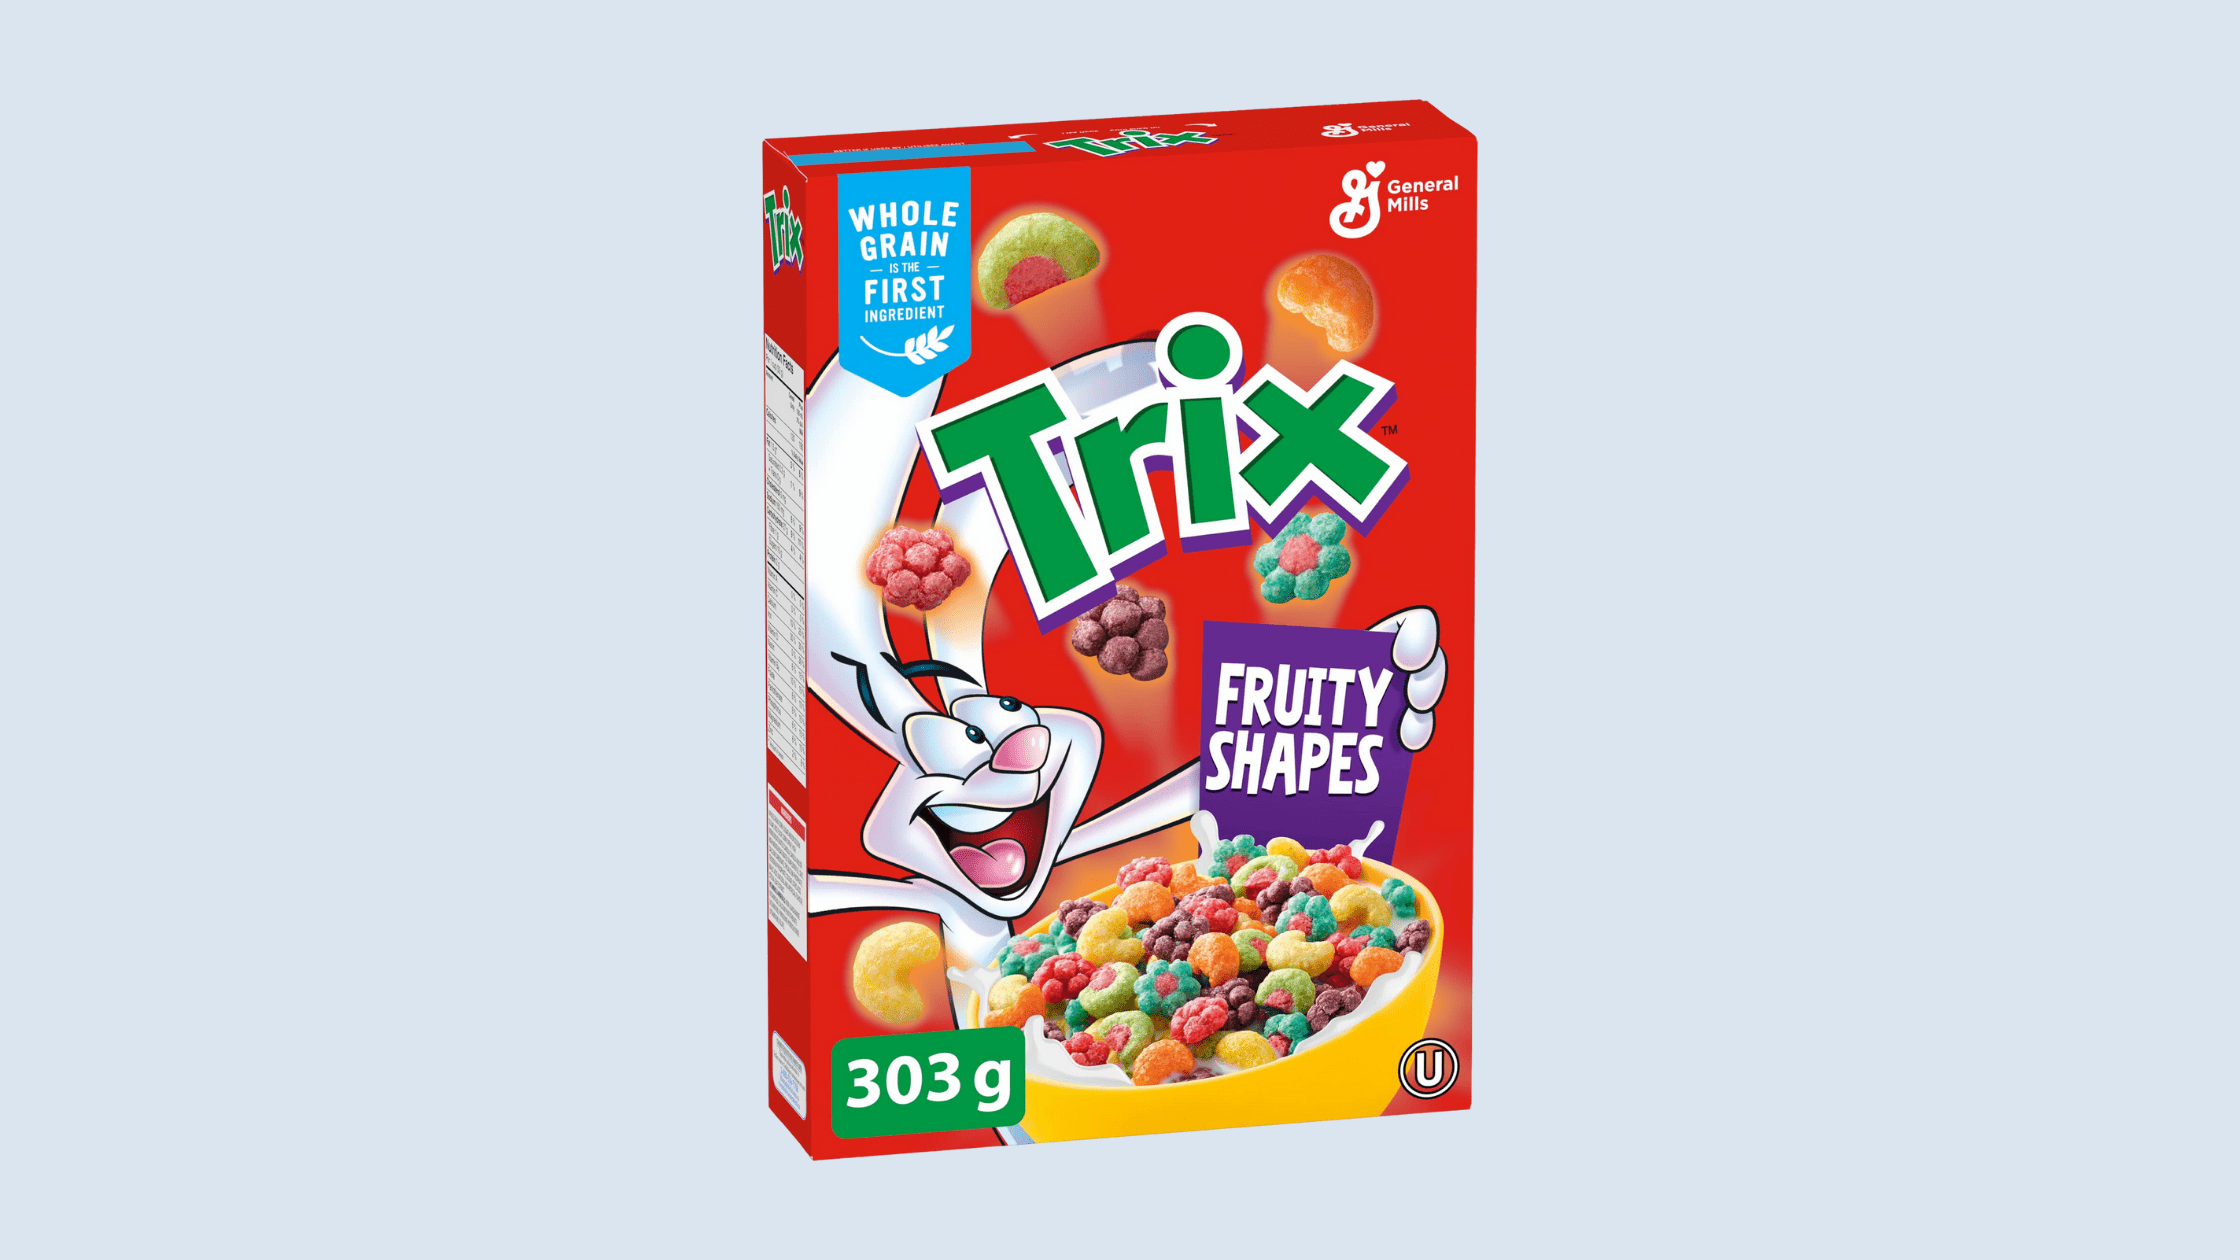 Fruit-Shaped Trix Cereal